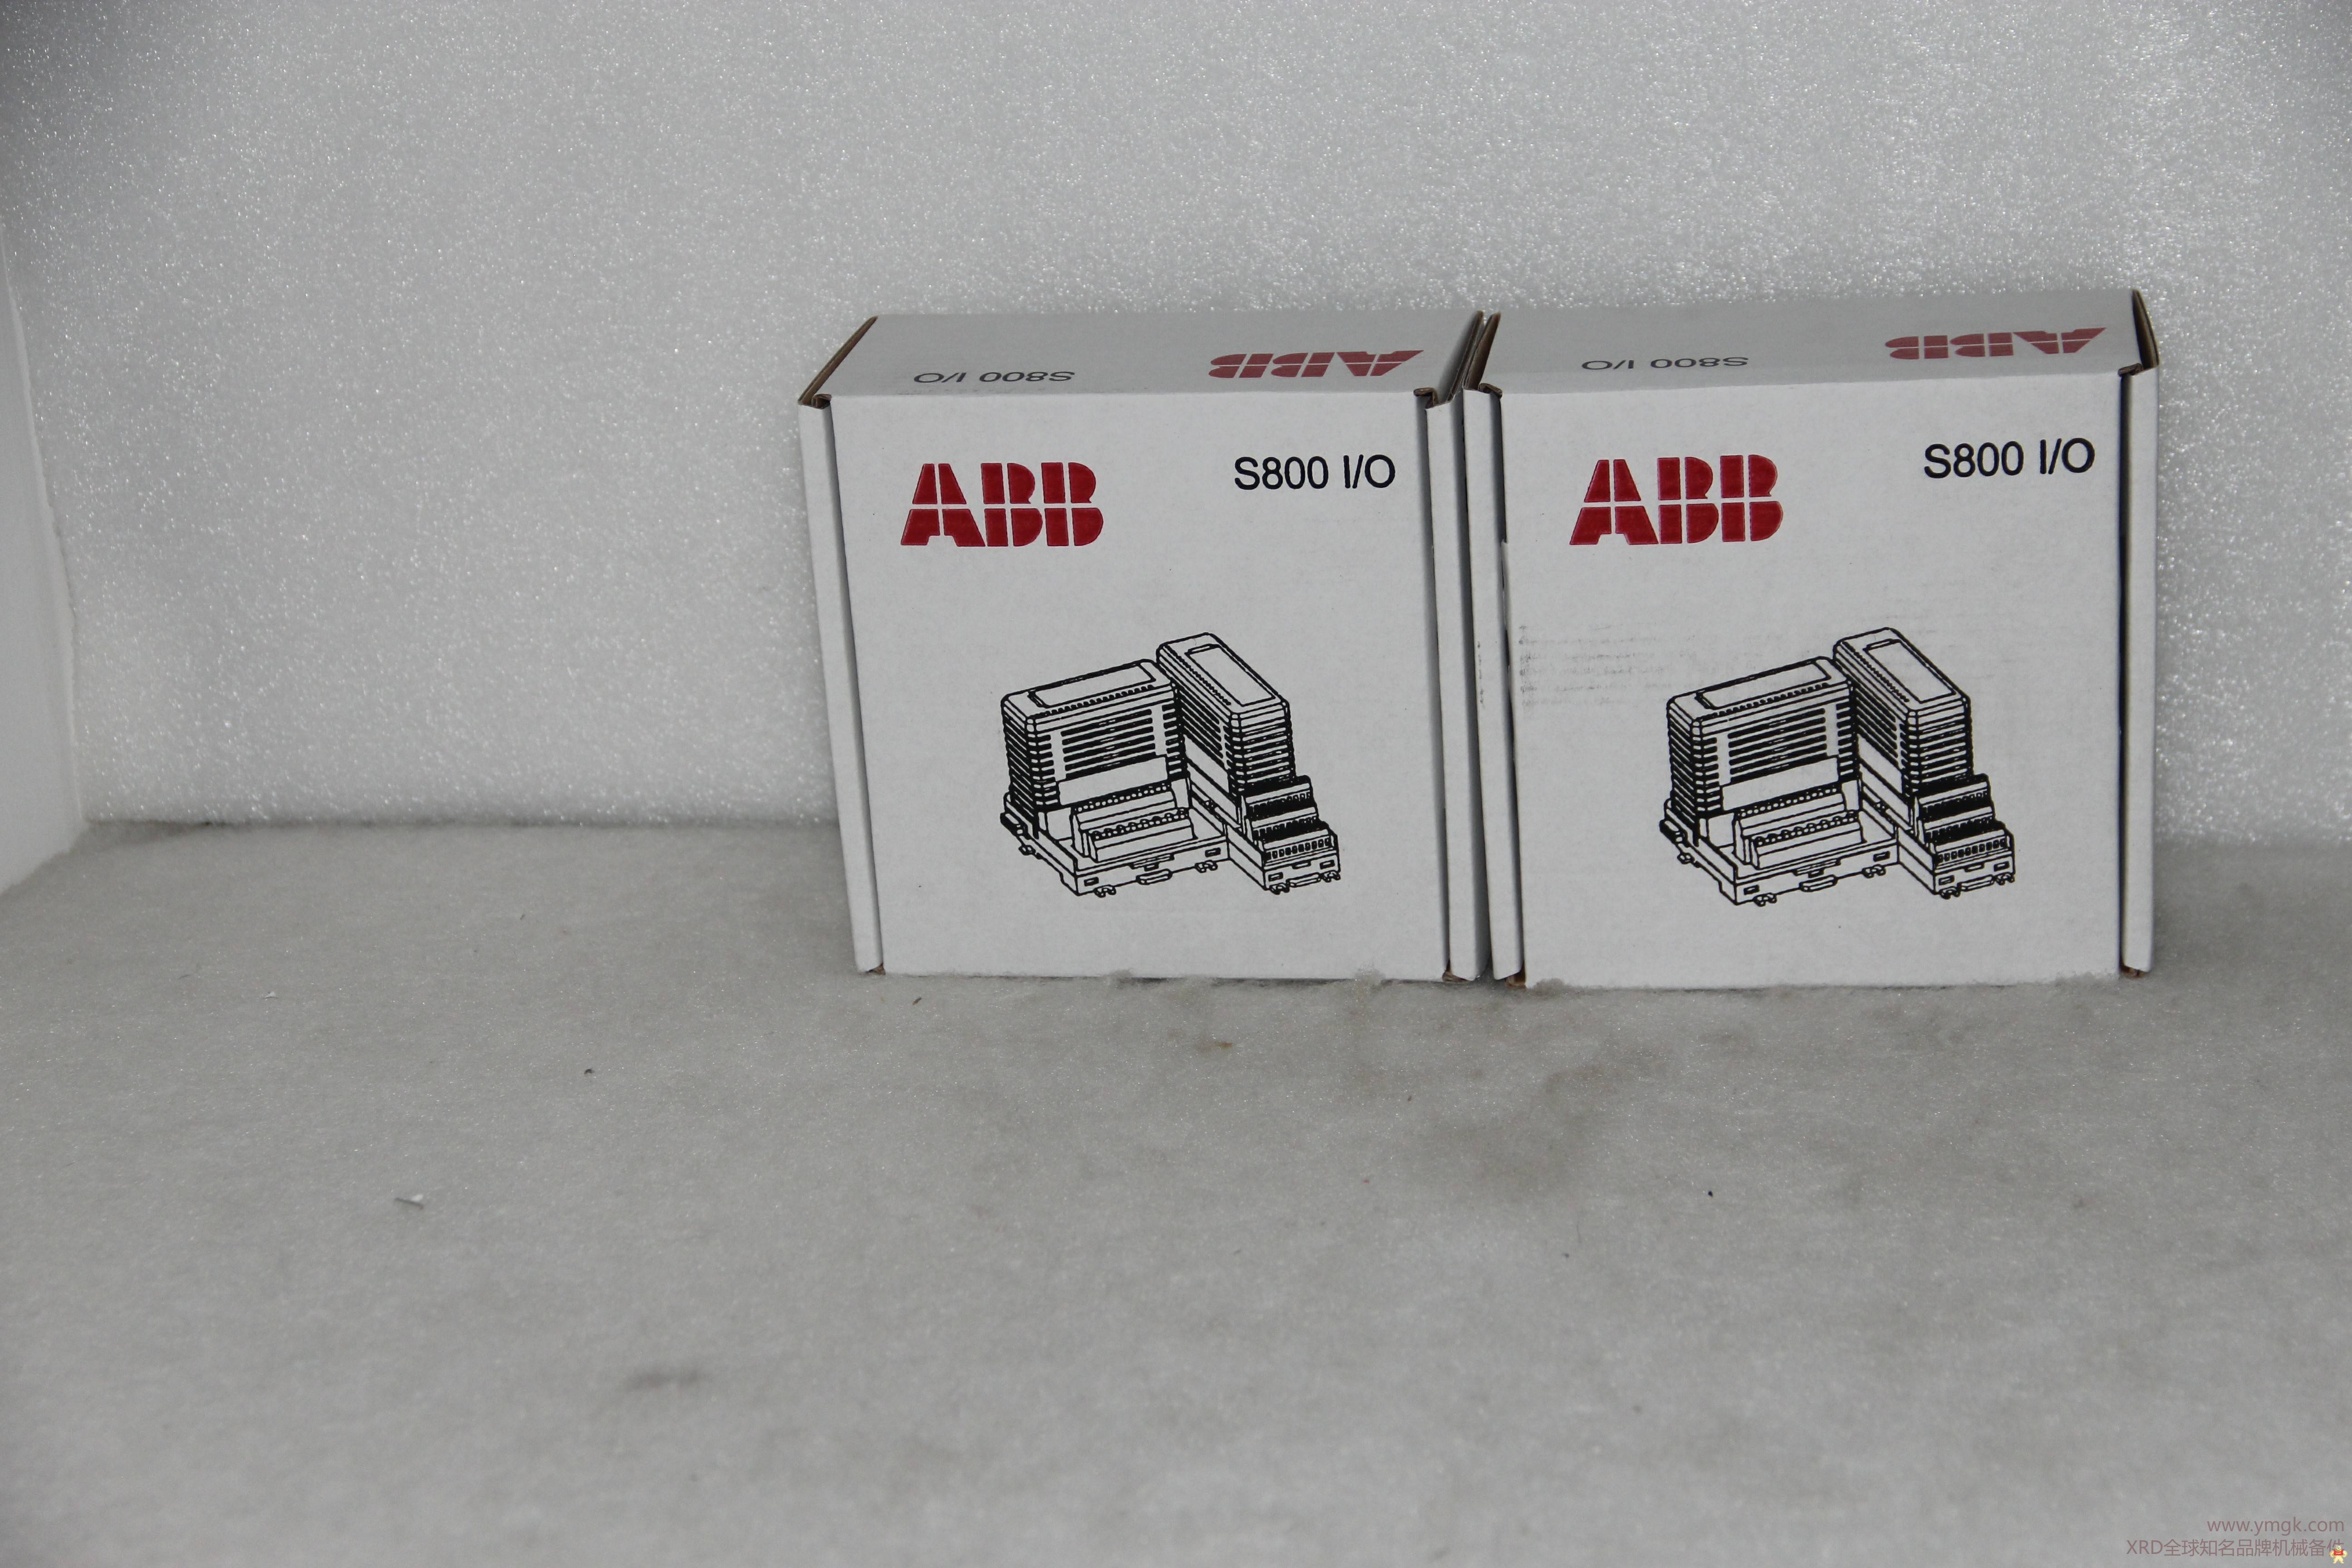 ABB	EHDB280 